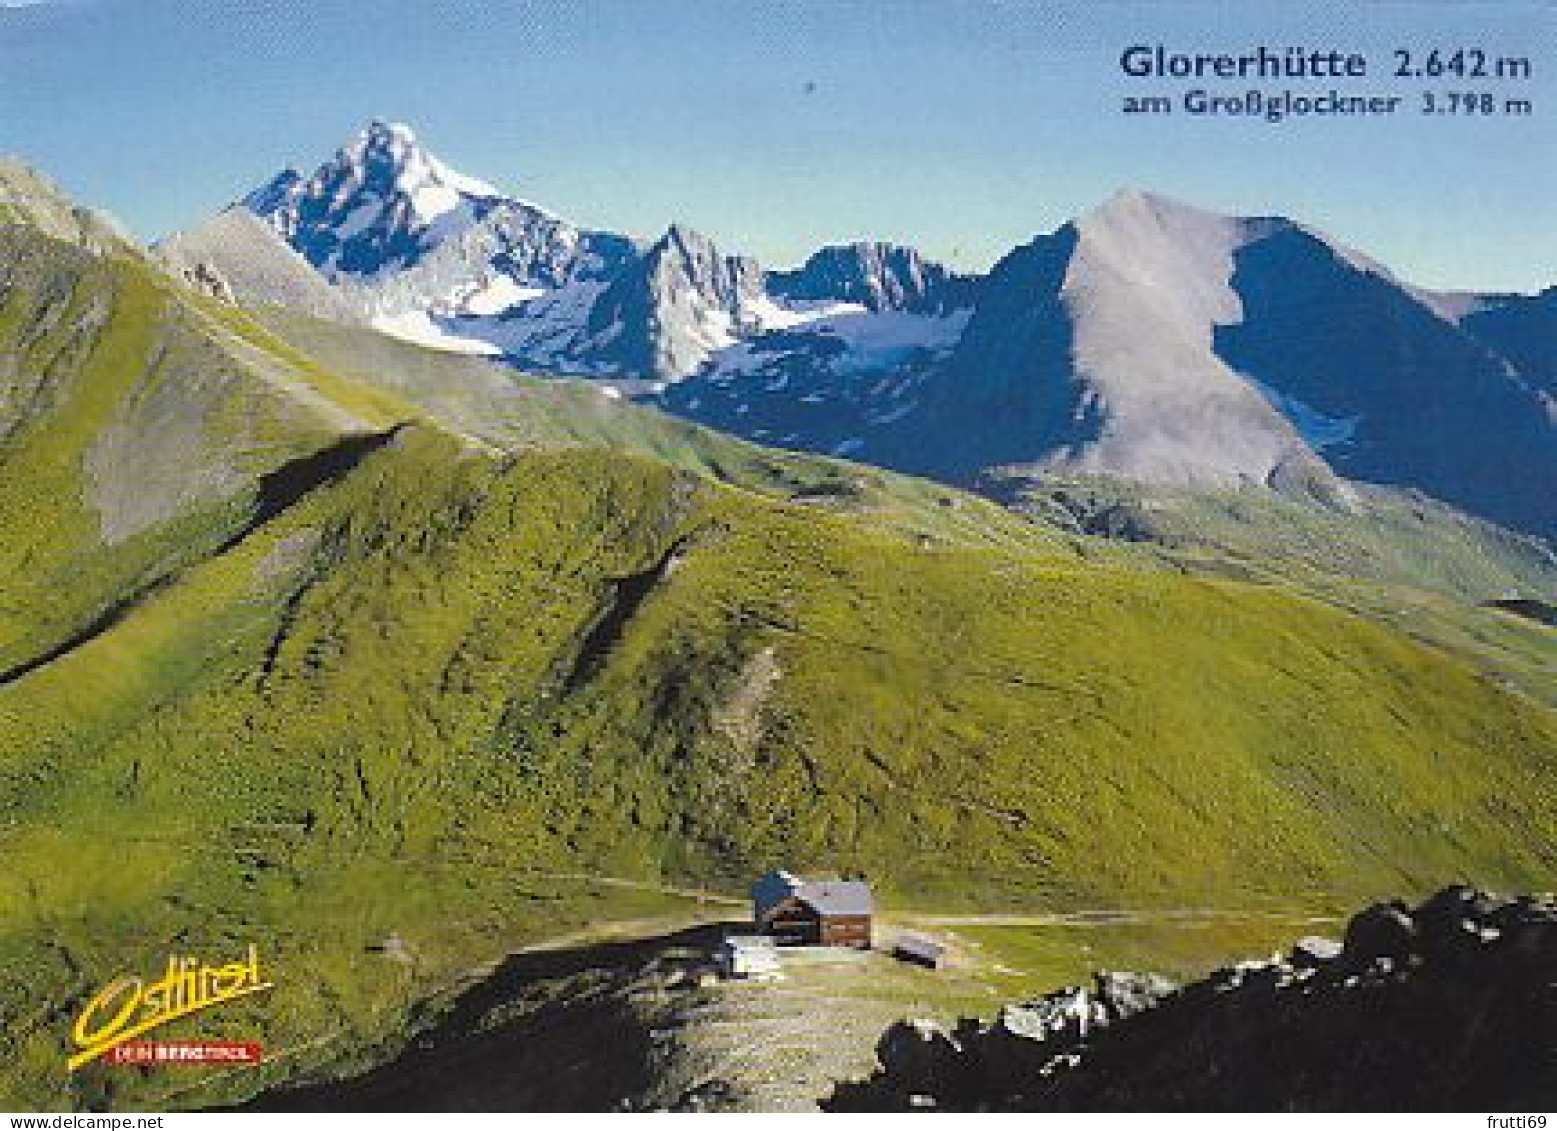 AK 202304 AUSTRIA - Kals Am Großglockner - Glorerhütte Am Großglockner - Kals